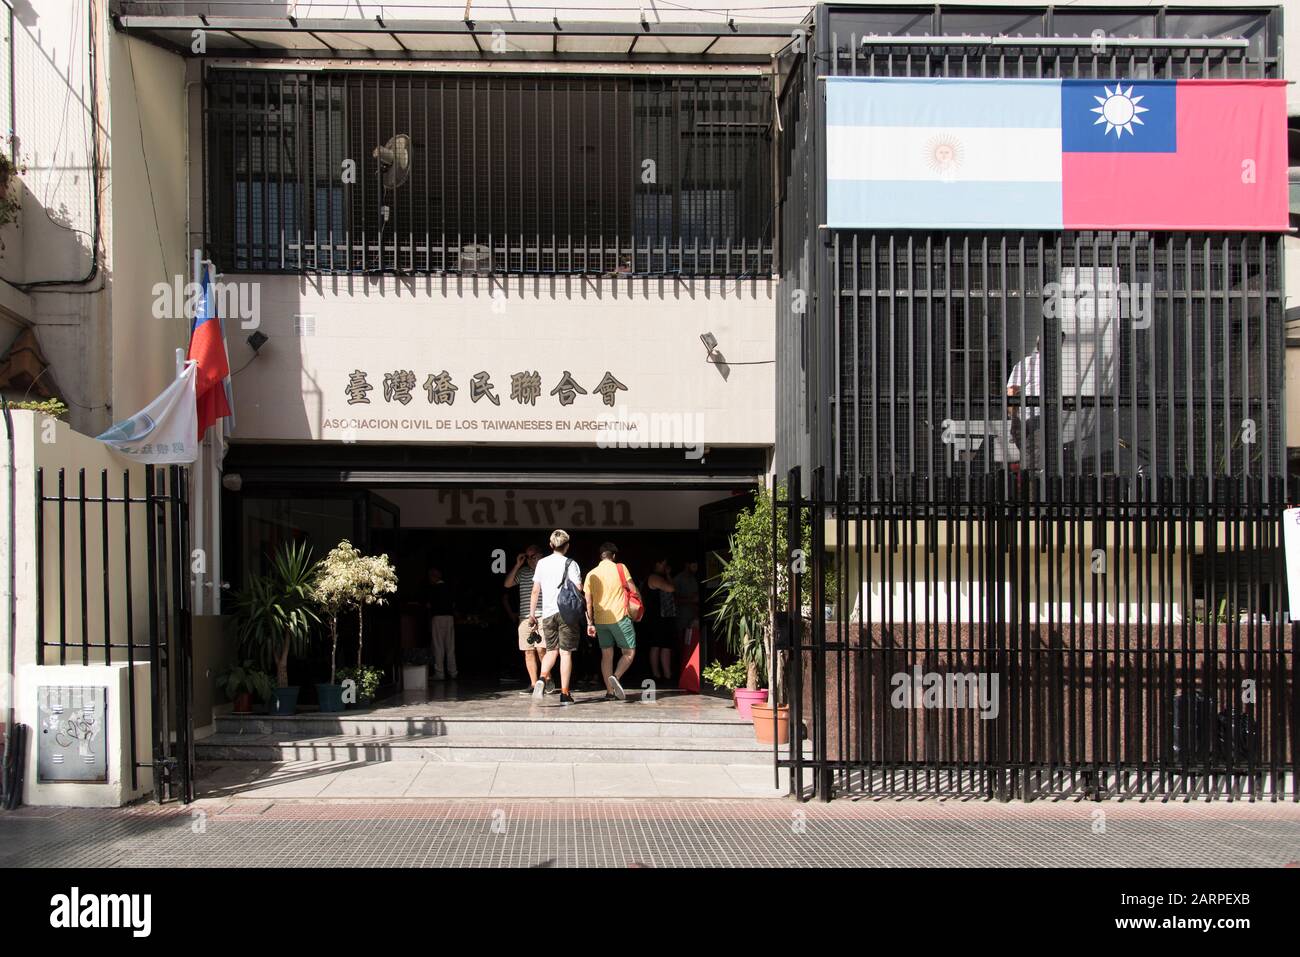 Capitale fédérale, Buenos Aires / Argentine; 25 janvier 2020: Façade de l'Association civile taïwanaise en Argentine, avec la porte ouverte et les gens enterin Banque D'Images